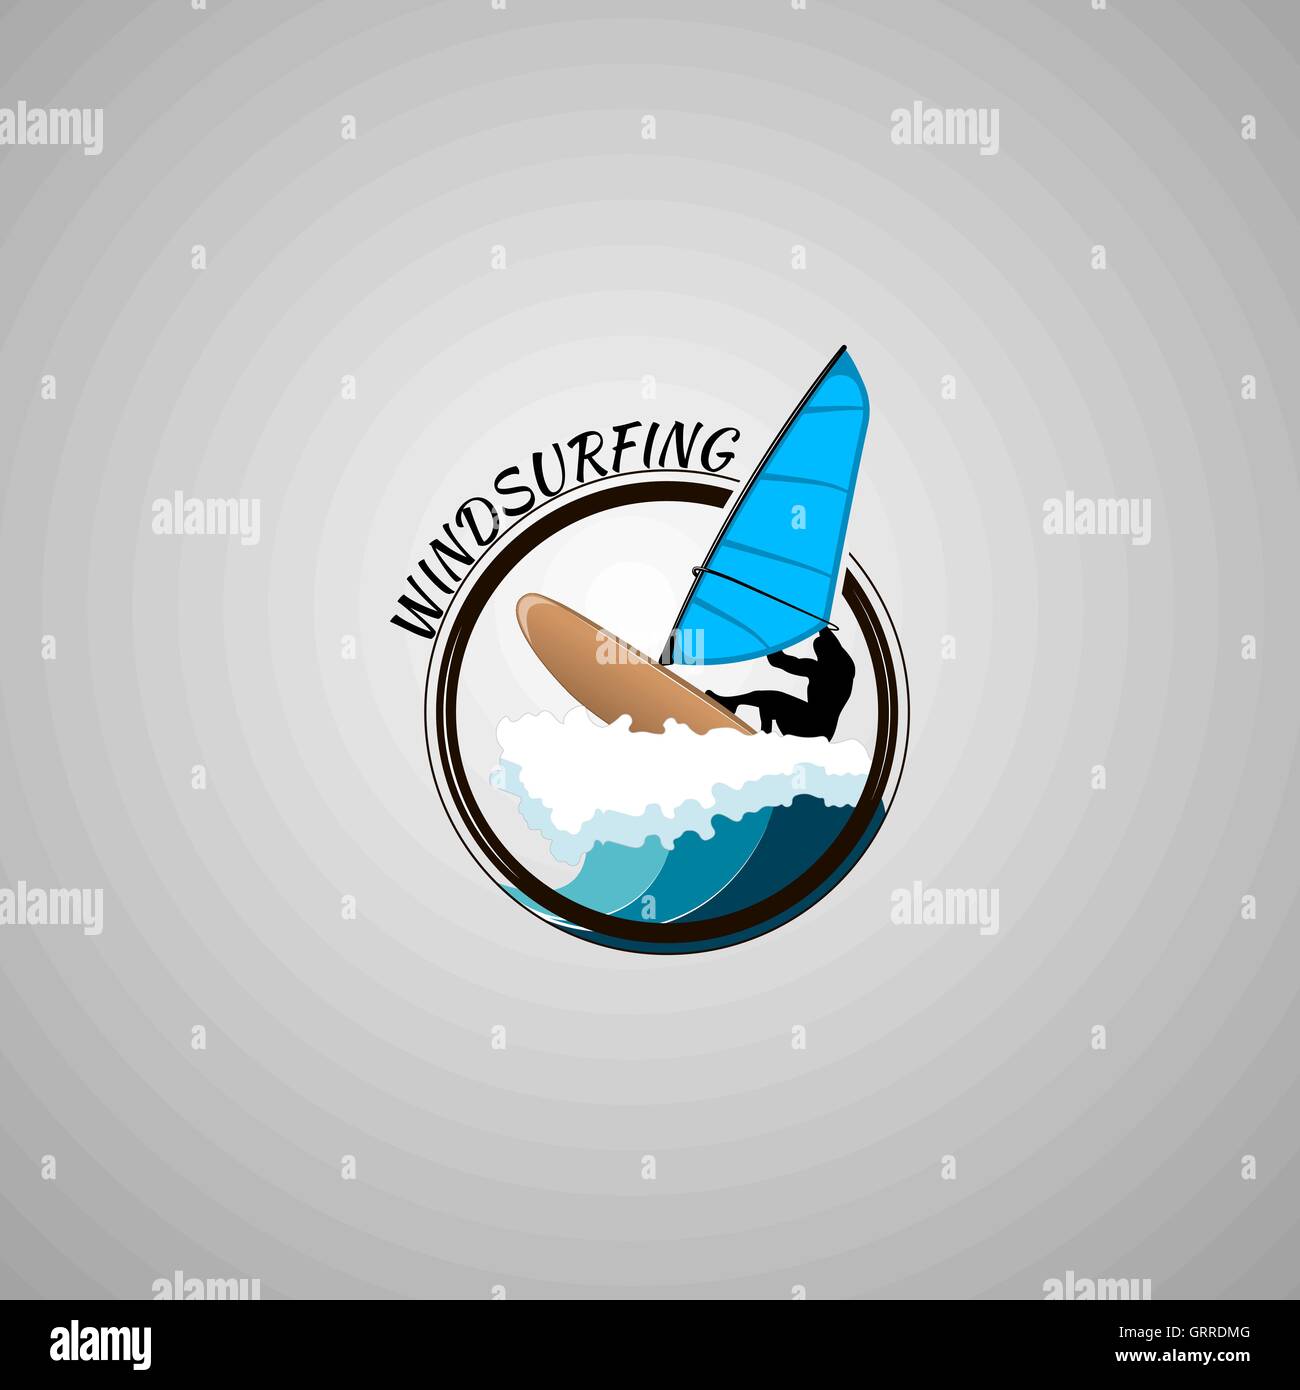 windsurfing logo vector illustration Stock Vector